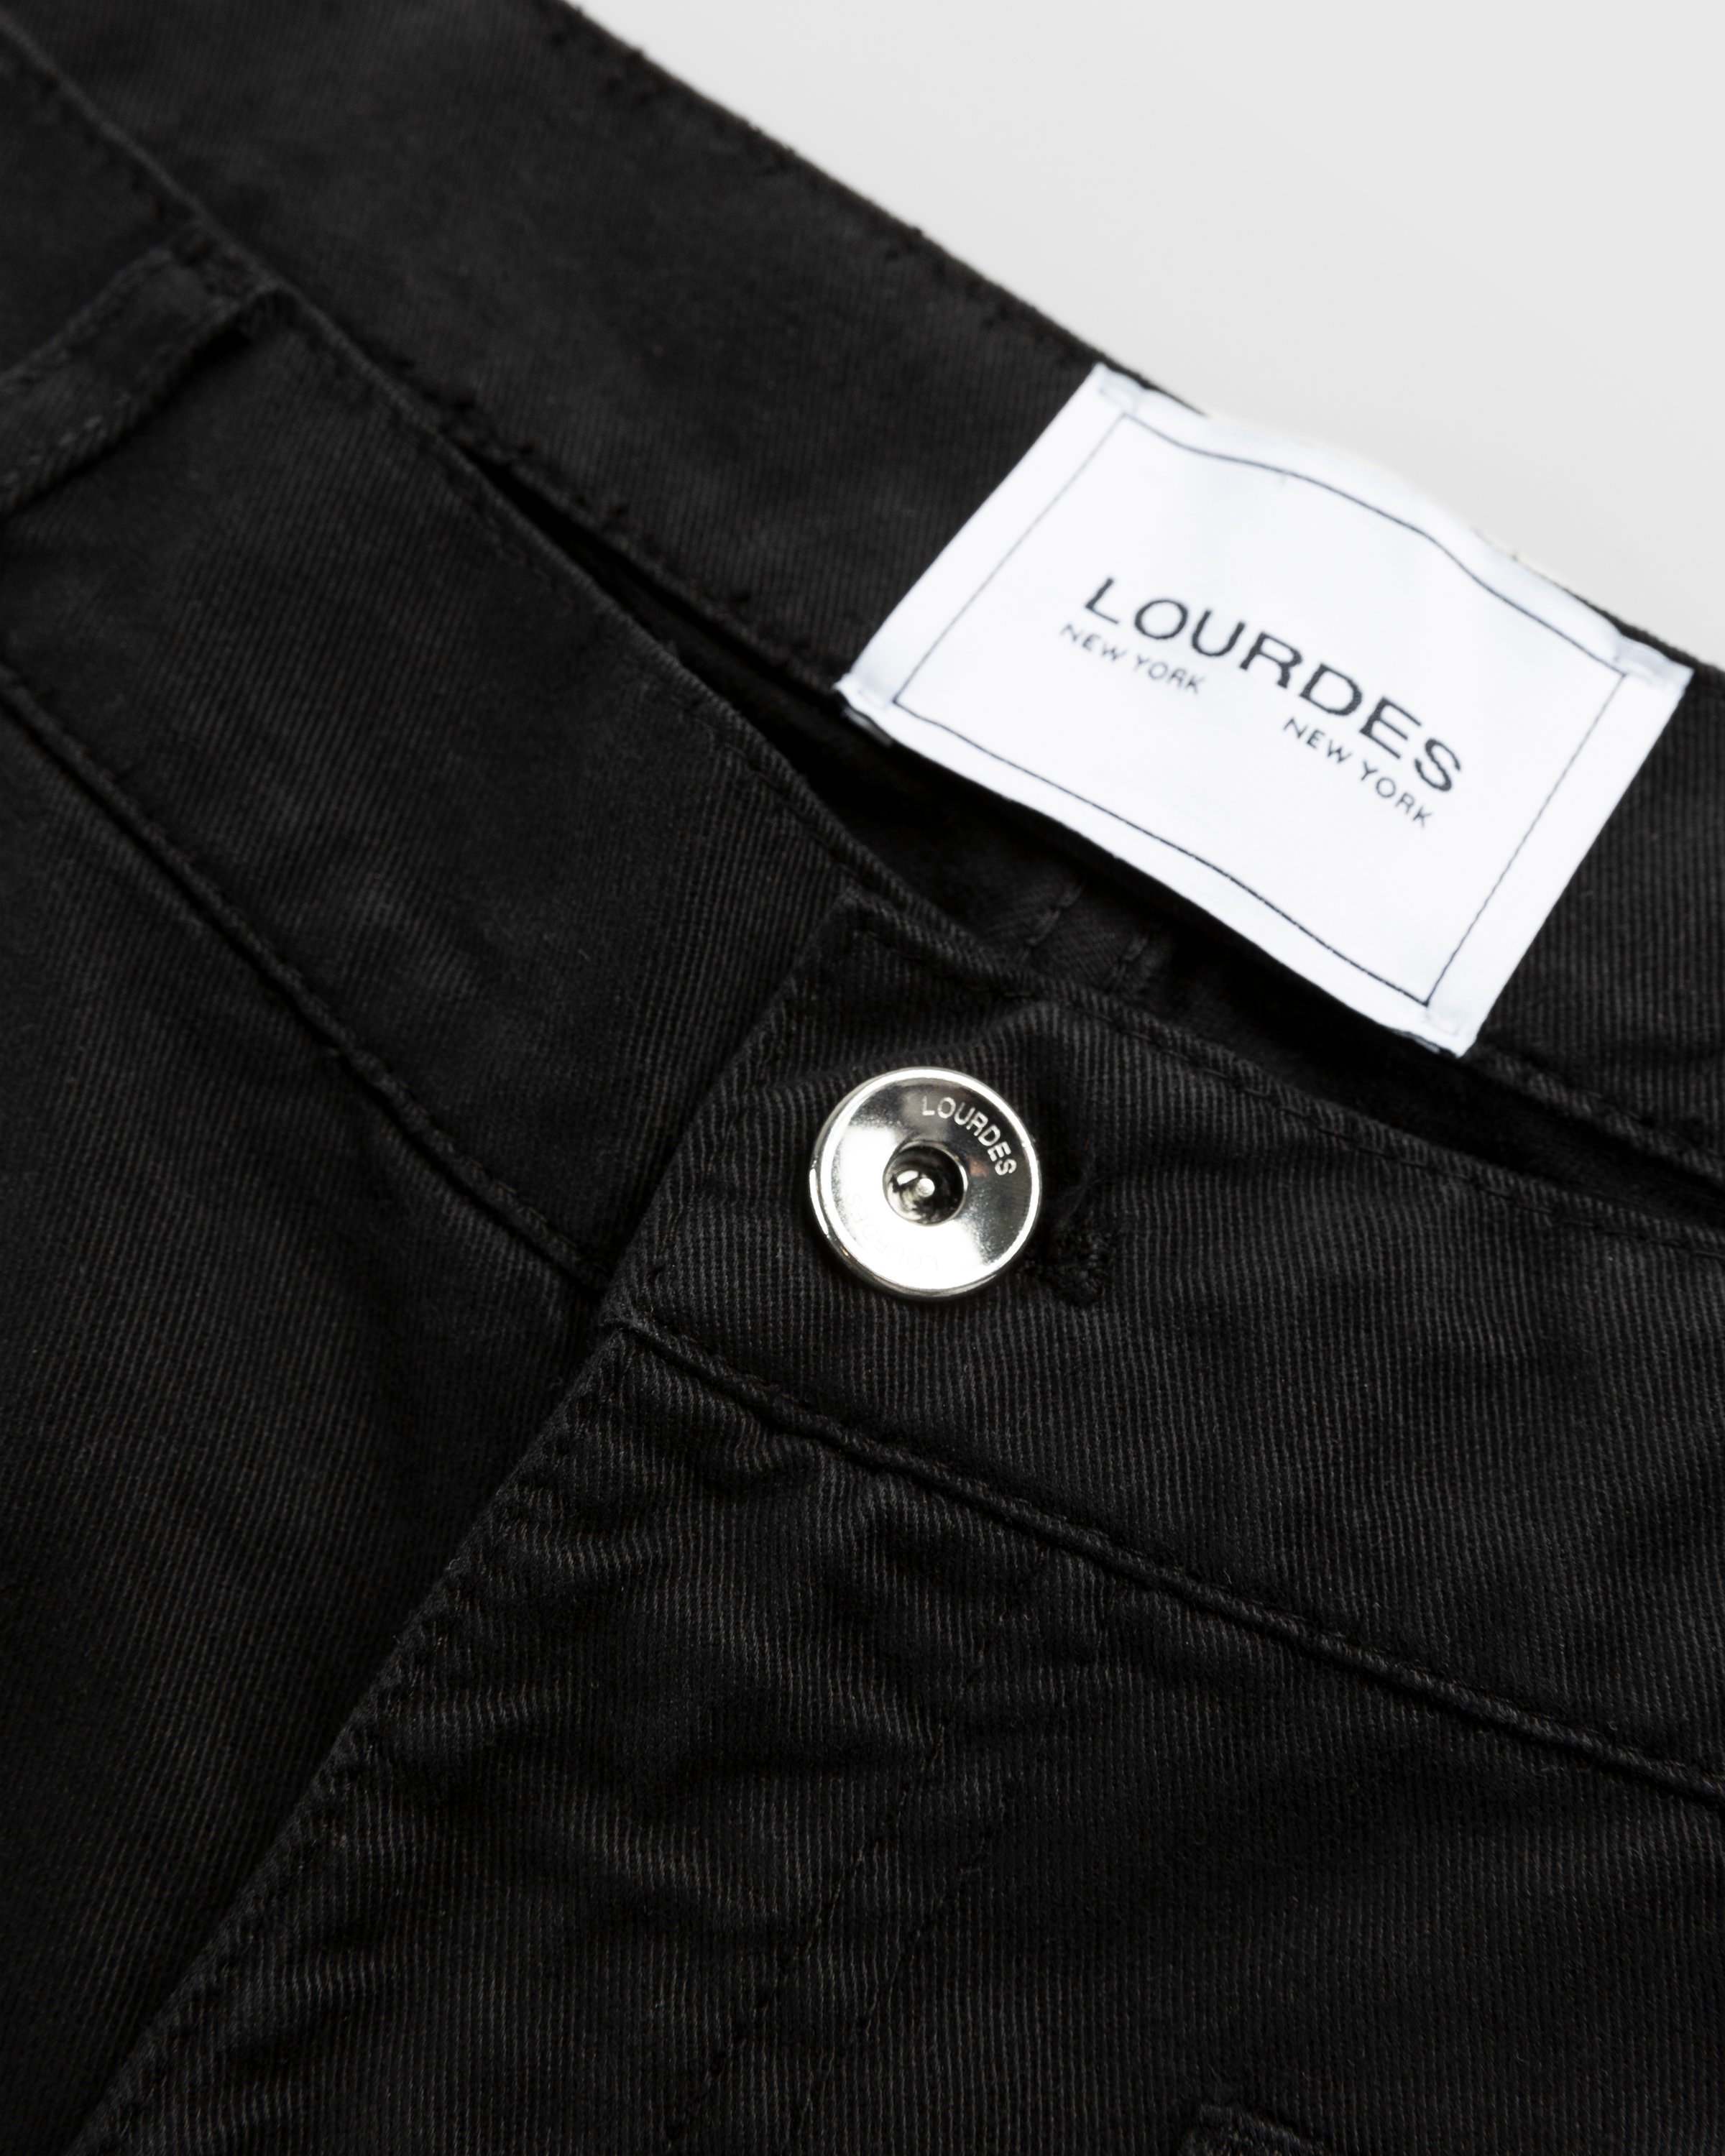 Lourdes New York - Multi-Pocket Cargo Short Black - Clothing - Black - Image 4